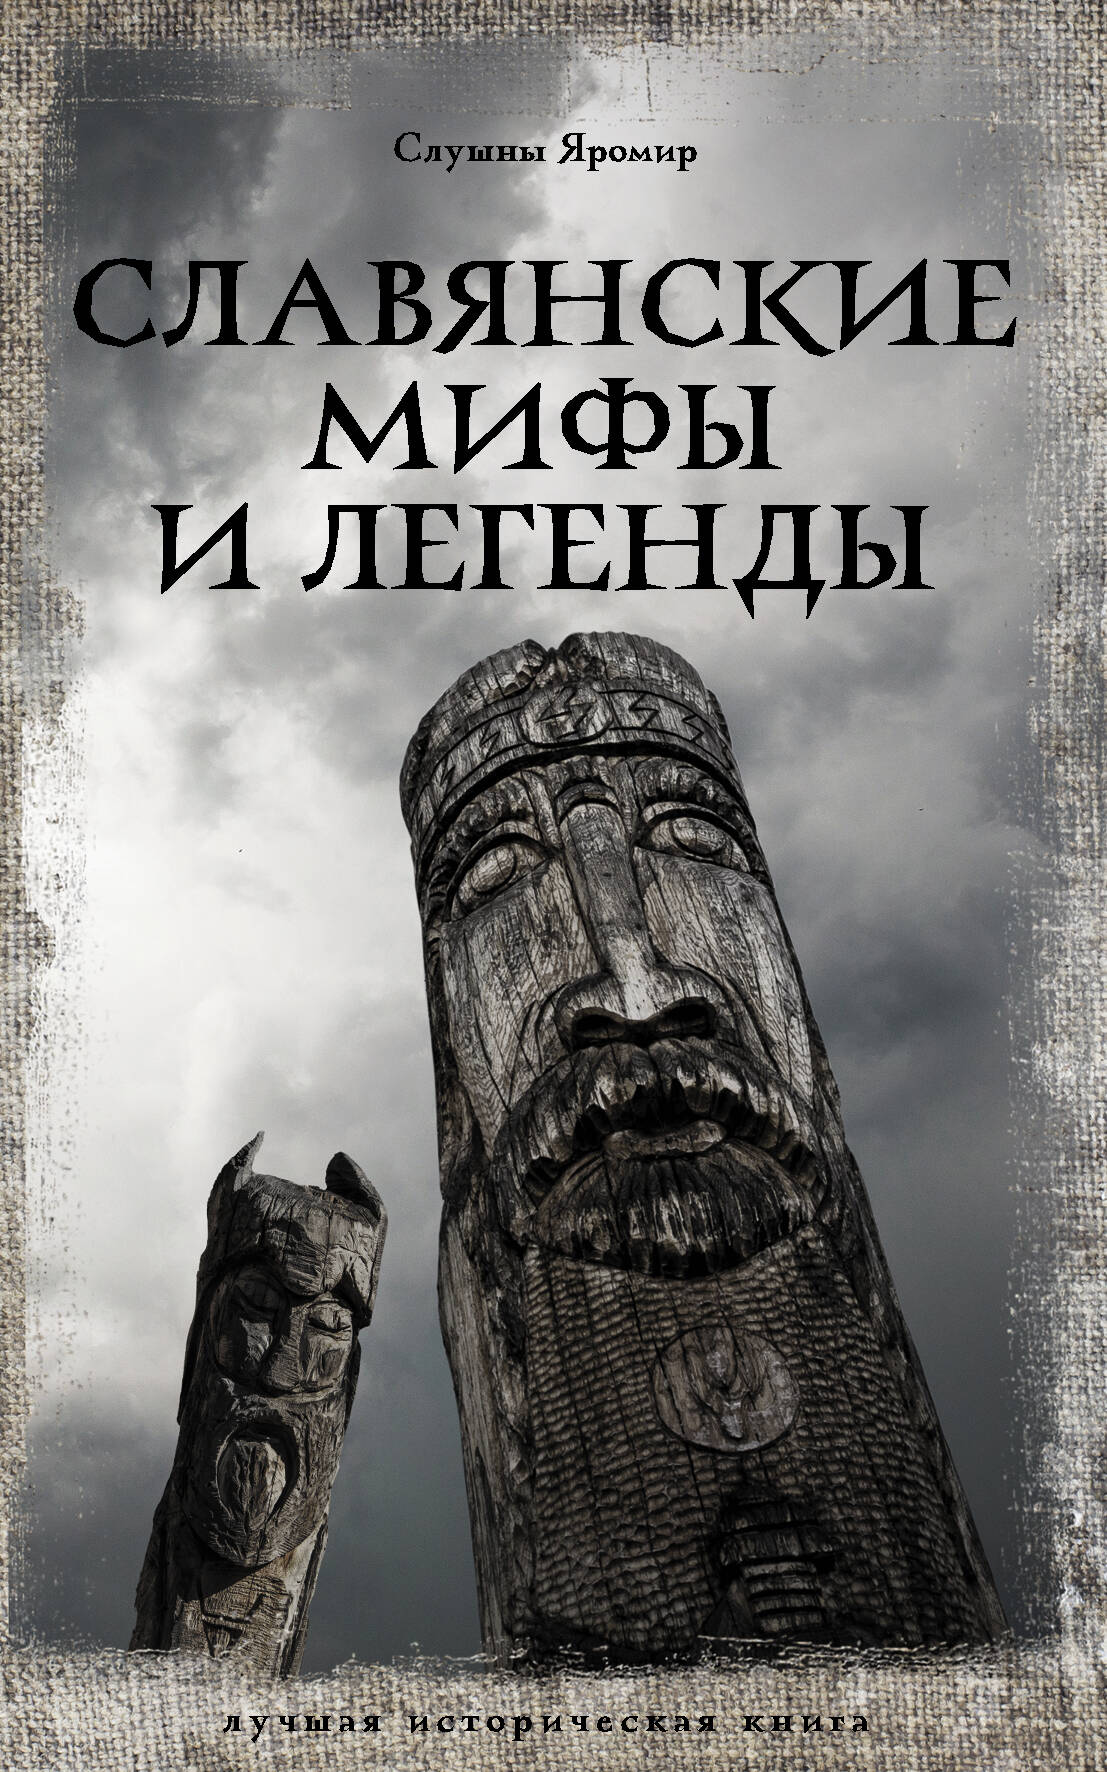 Славянские мифы и легенды слушны яромир все славянские мифы и легенды